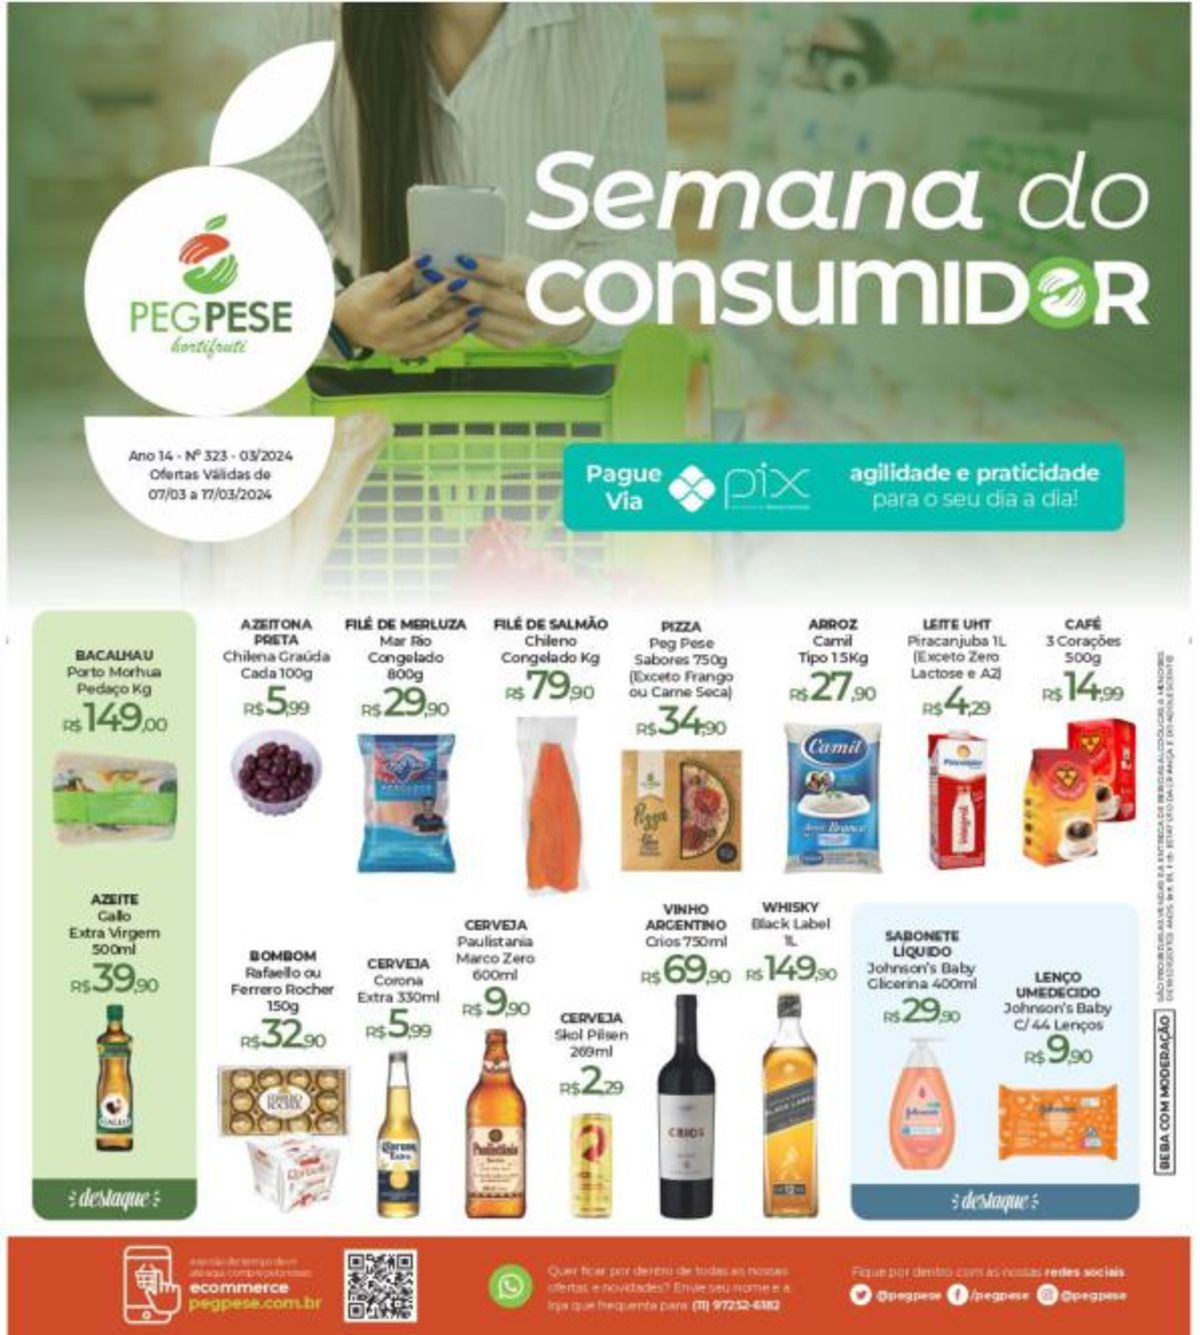 Ofertas Semana do Consumidor Peg Pese - Produtos de Supermercado em Promoção